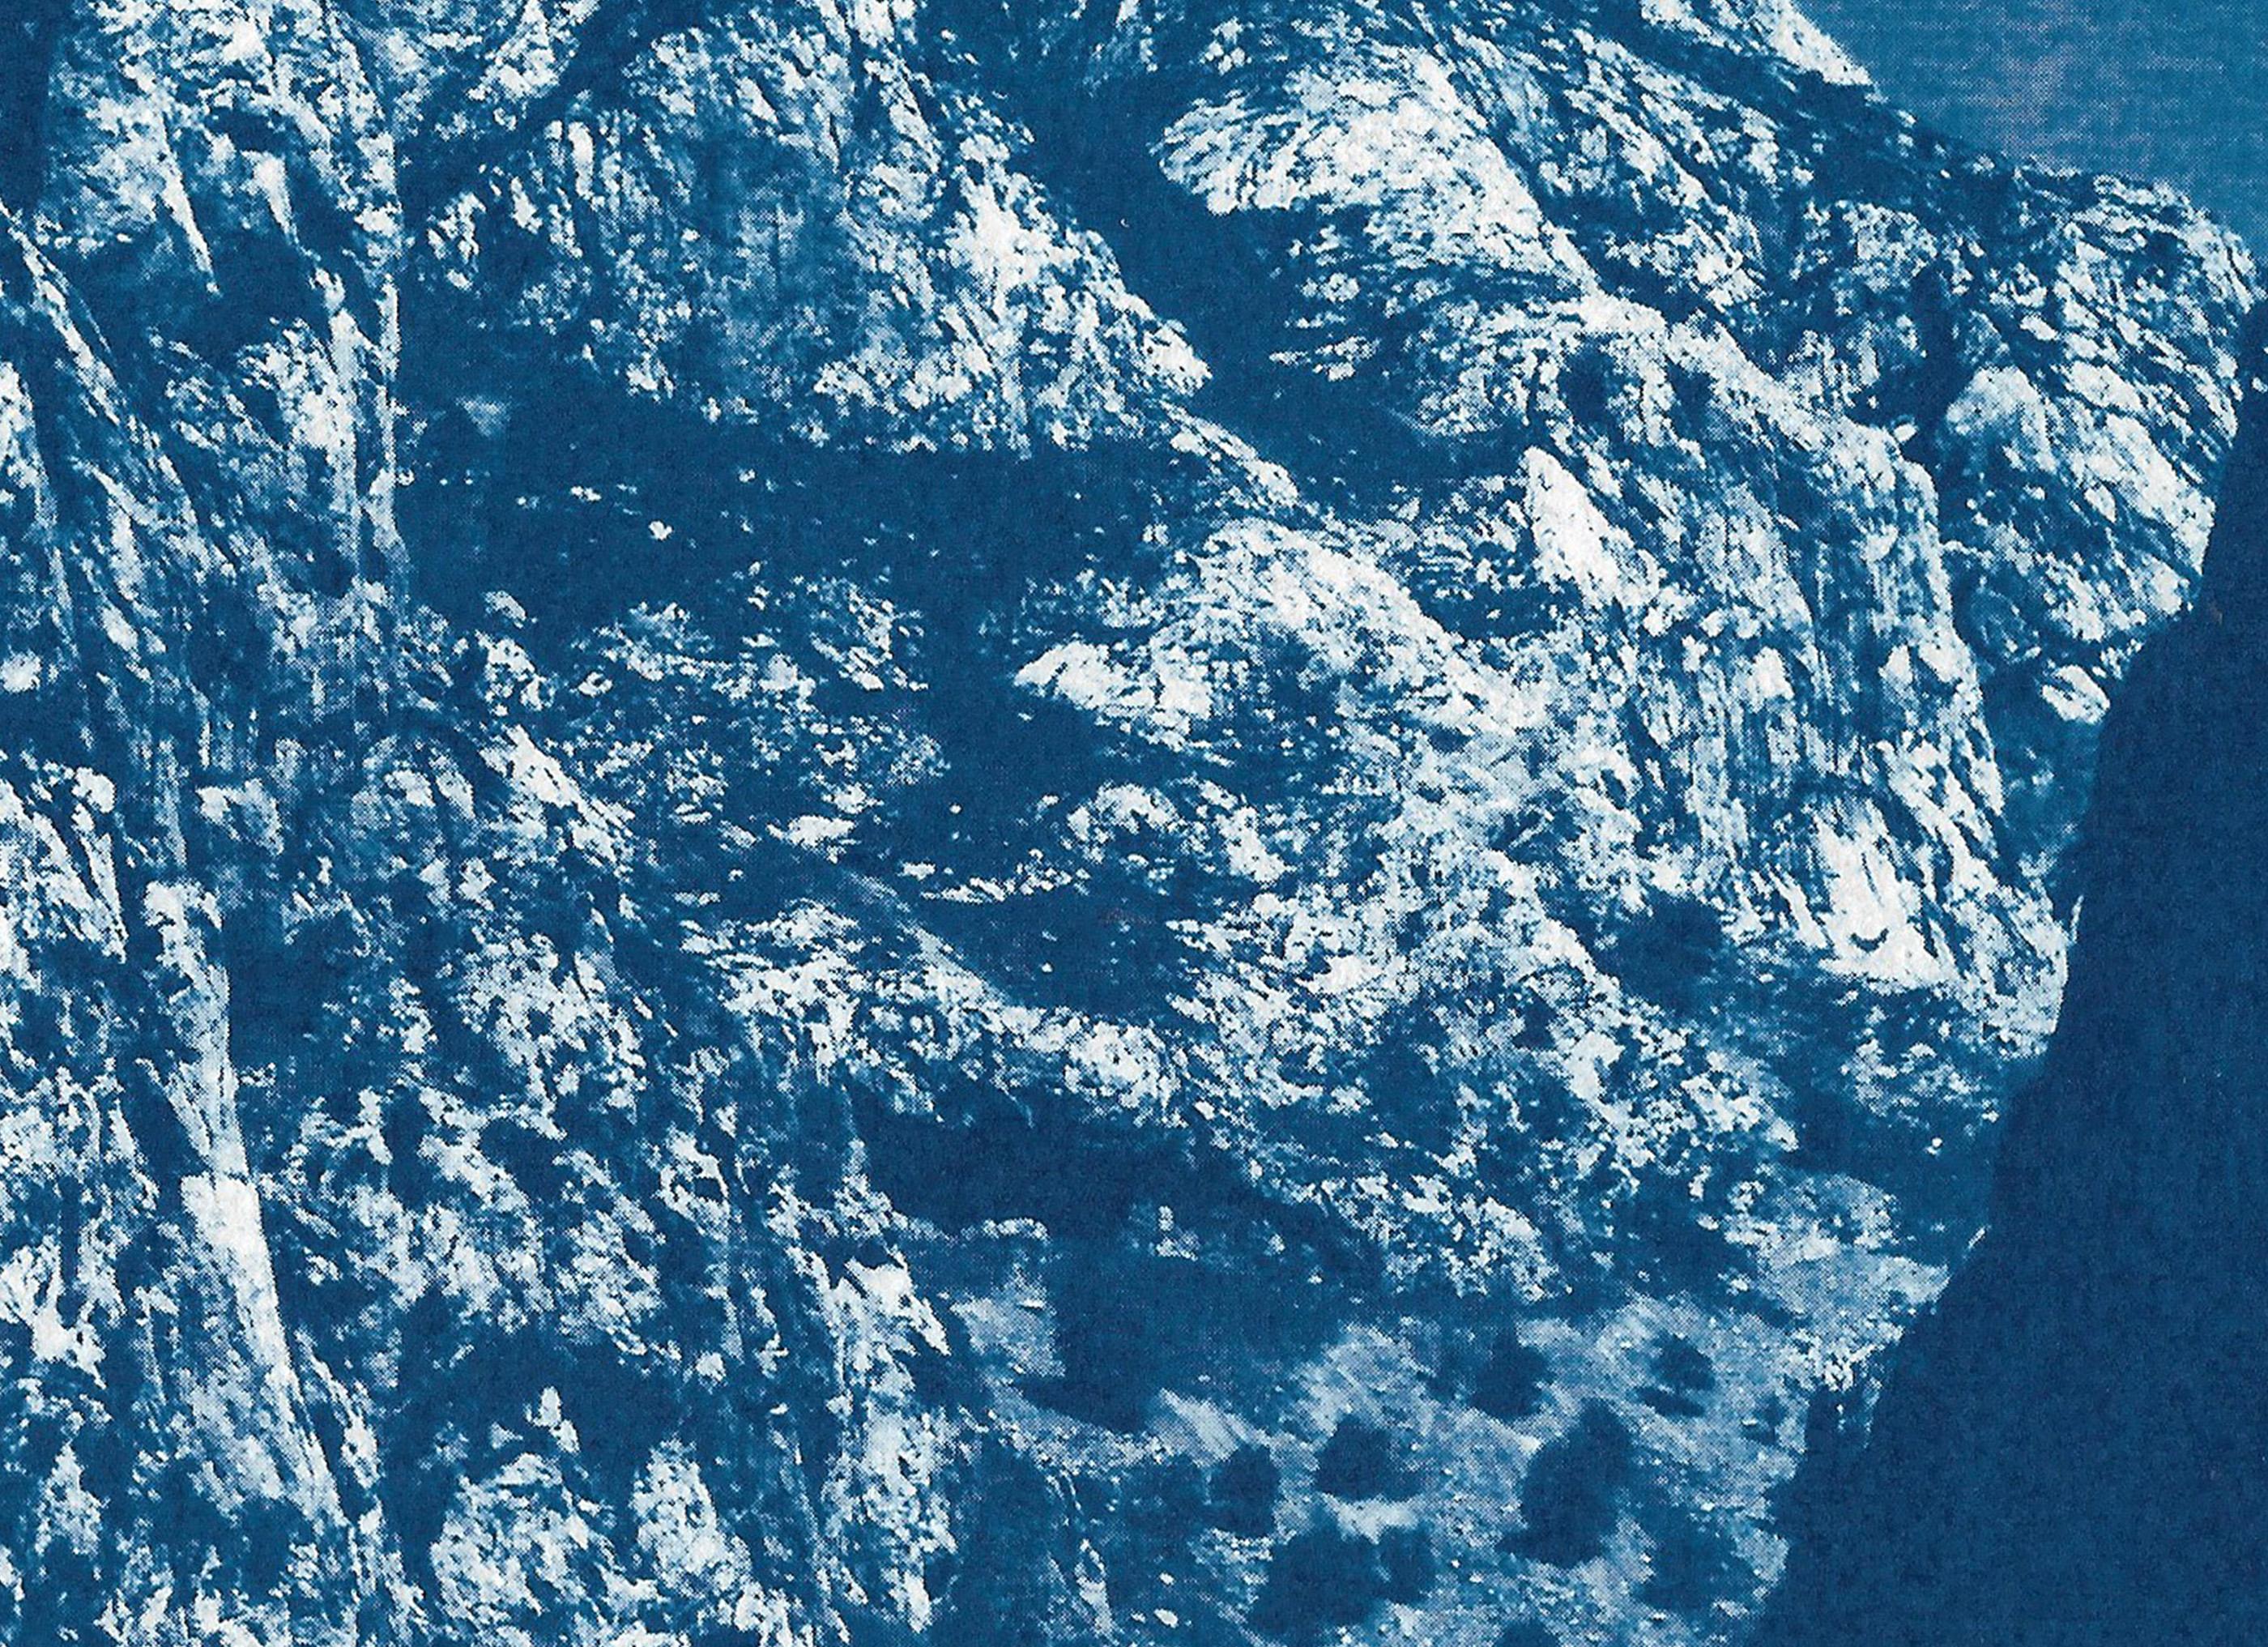 Il s'agit d'un cyanotype exclusif imprimé à la main en édition limitée.
Ce cyanotype montre l'une des montagnes du magnifique parc national de Yosemite en Californie.

Détails :
+ Titre : Montagne bleue de Yosemite
+ Année : 2021
+ Taille de